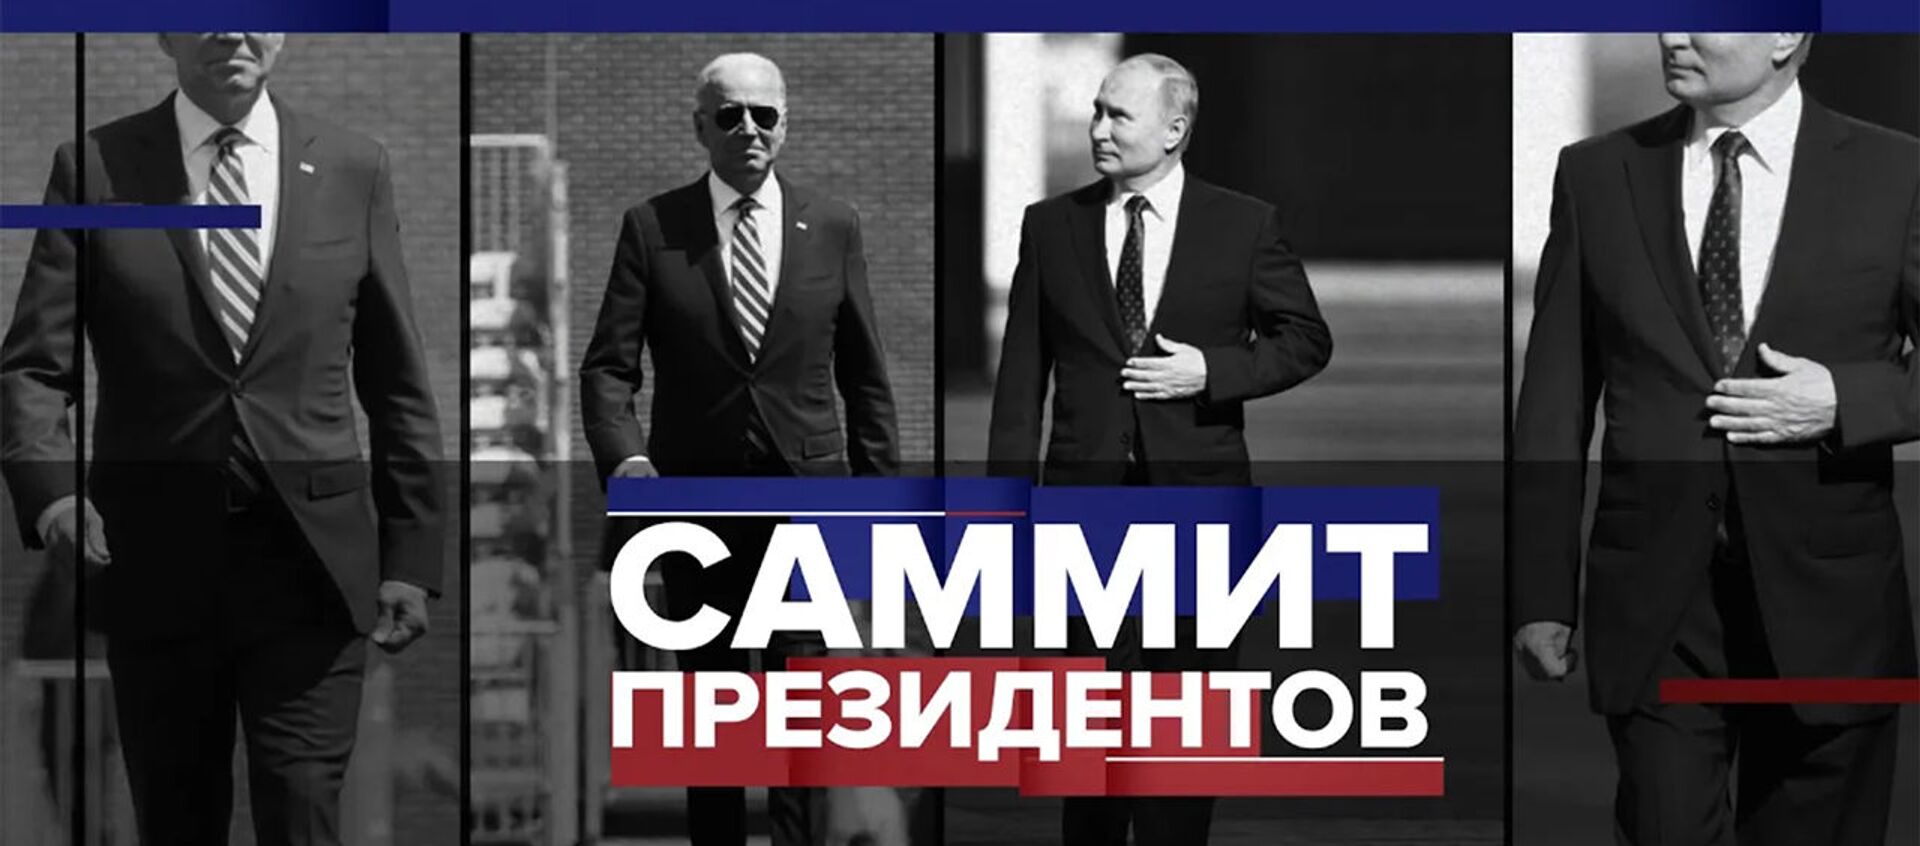 Встреча в Женеве: главное о предстоящих переговорах Владимира Путина и Джо Байдена - Sputnik Армения, 1920, 11.06.2021